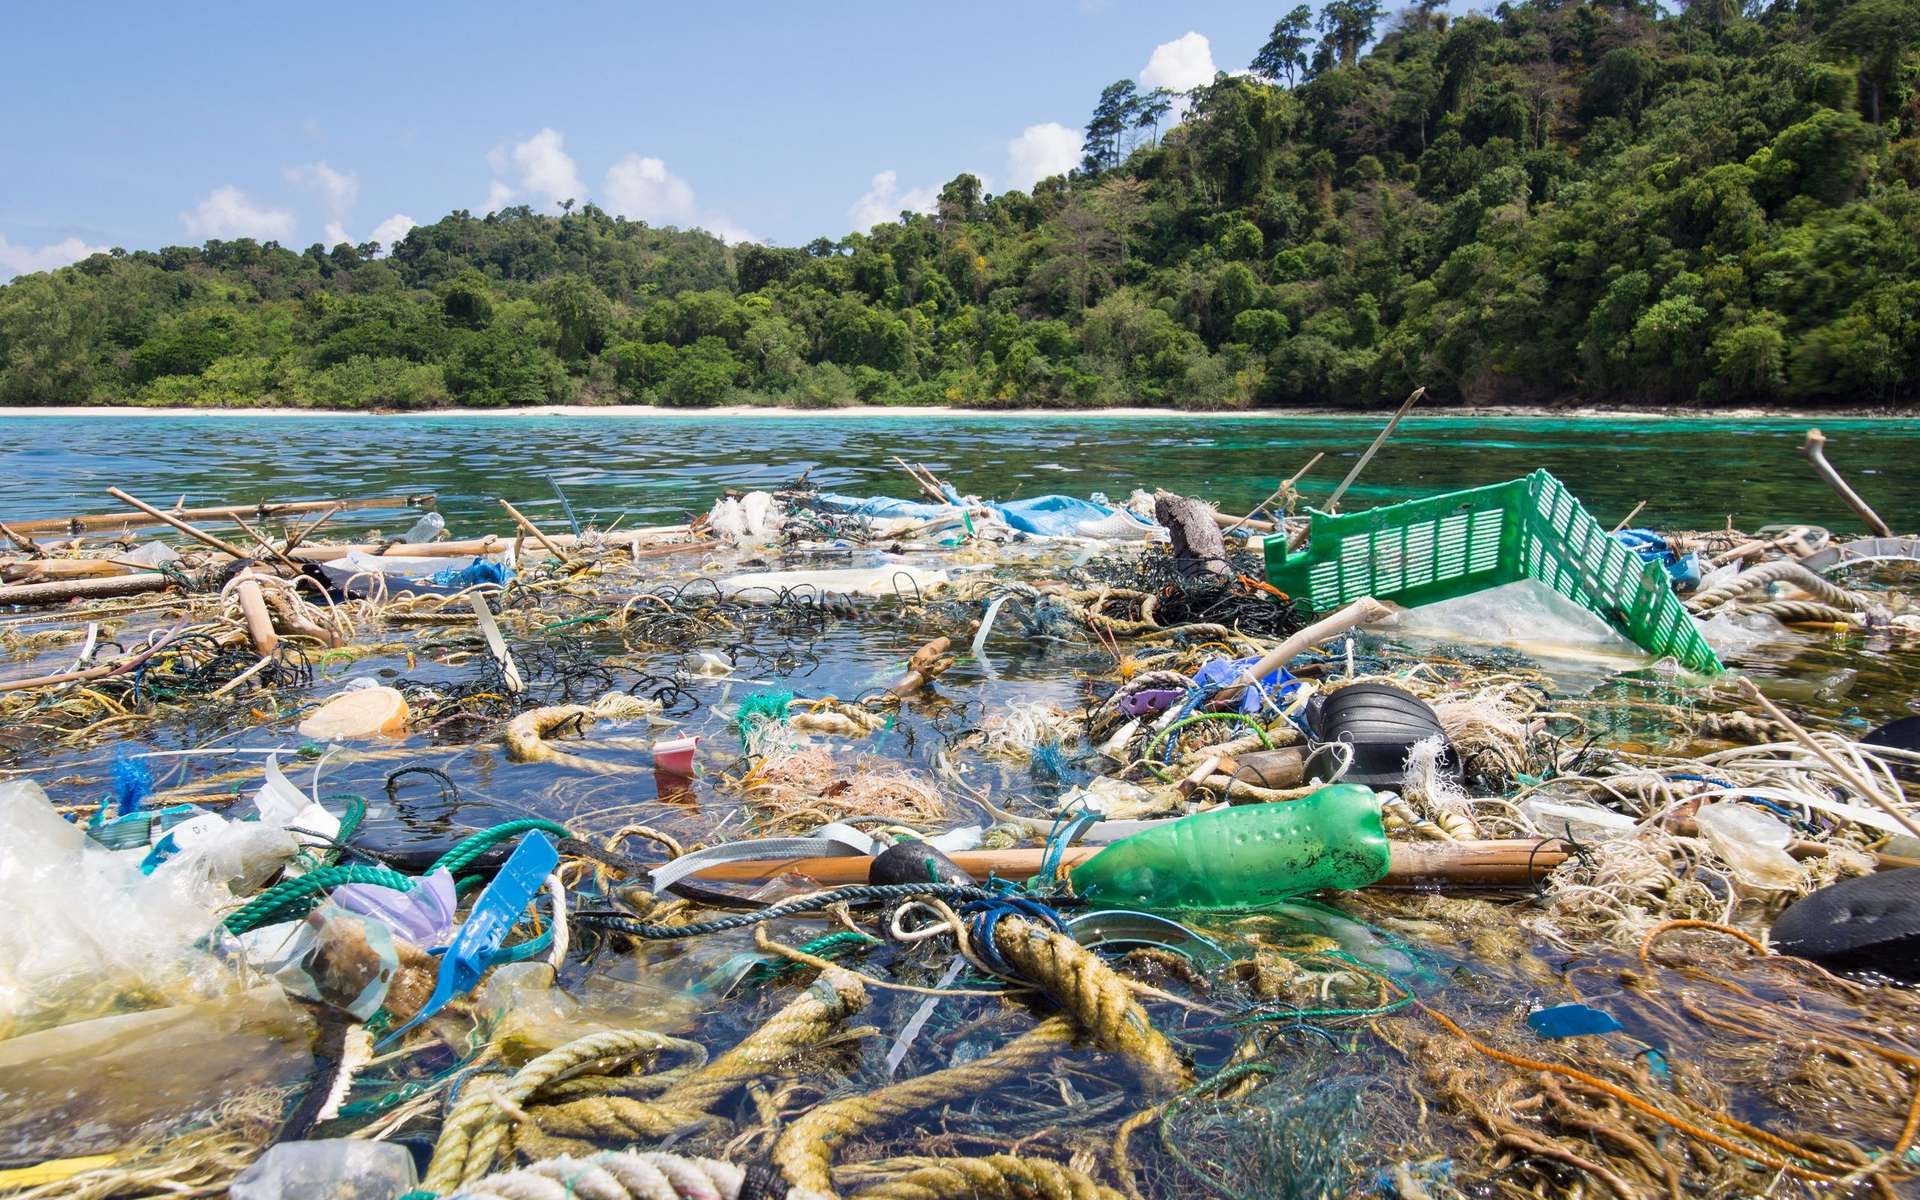 Une cinquantaine de multinationales sont responsables de la moitié de la pollution plastique dans le monde